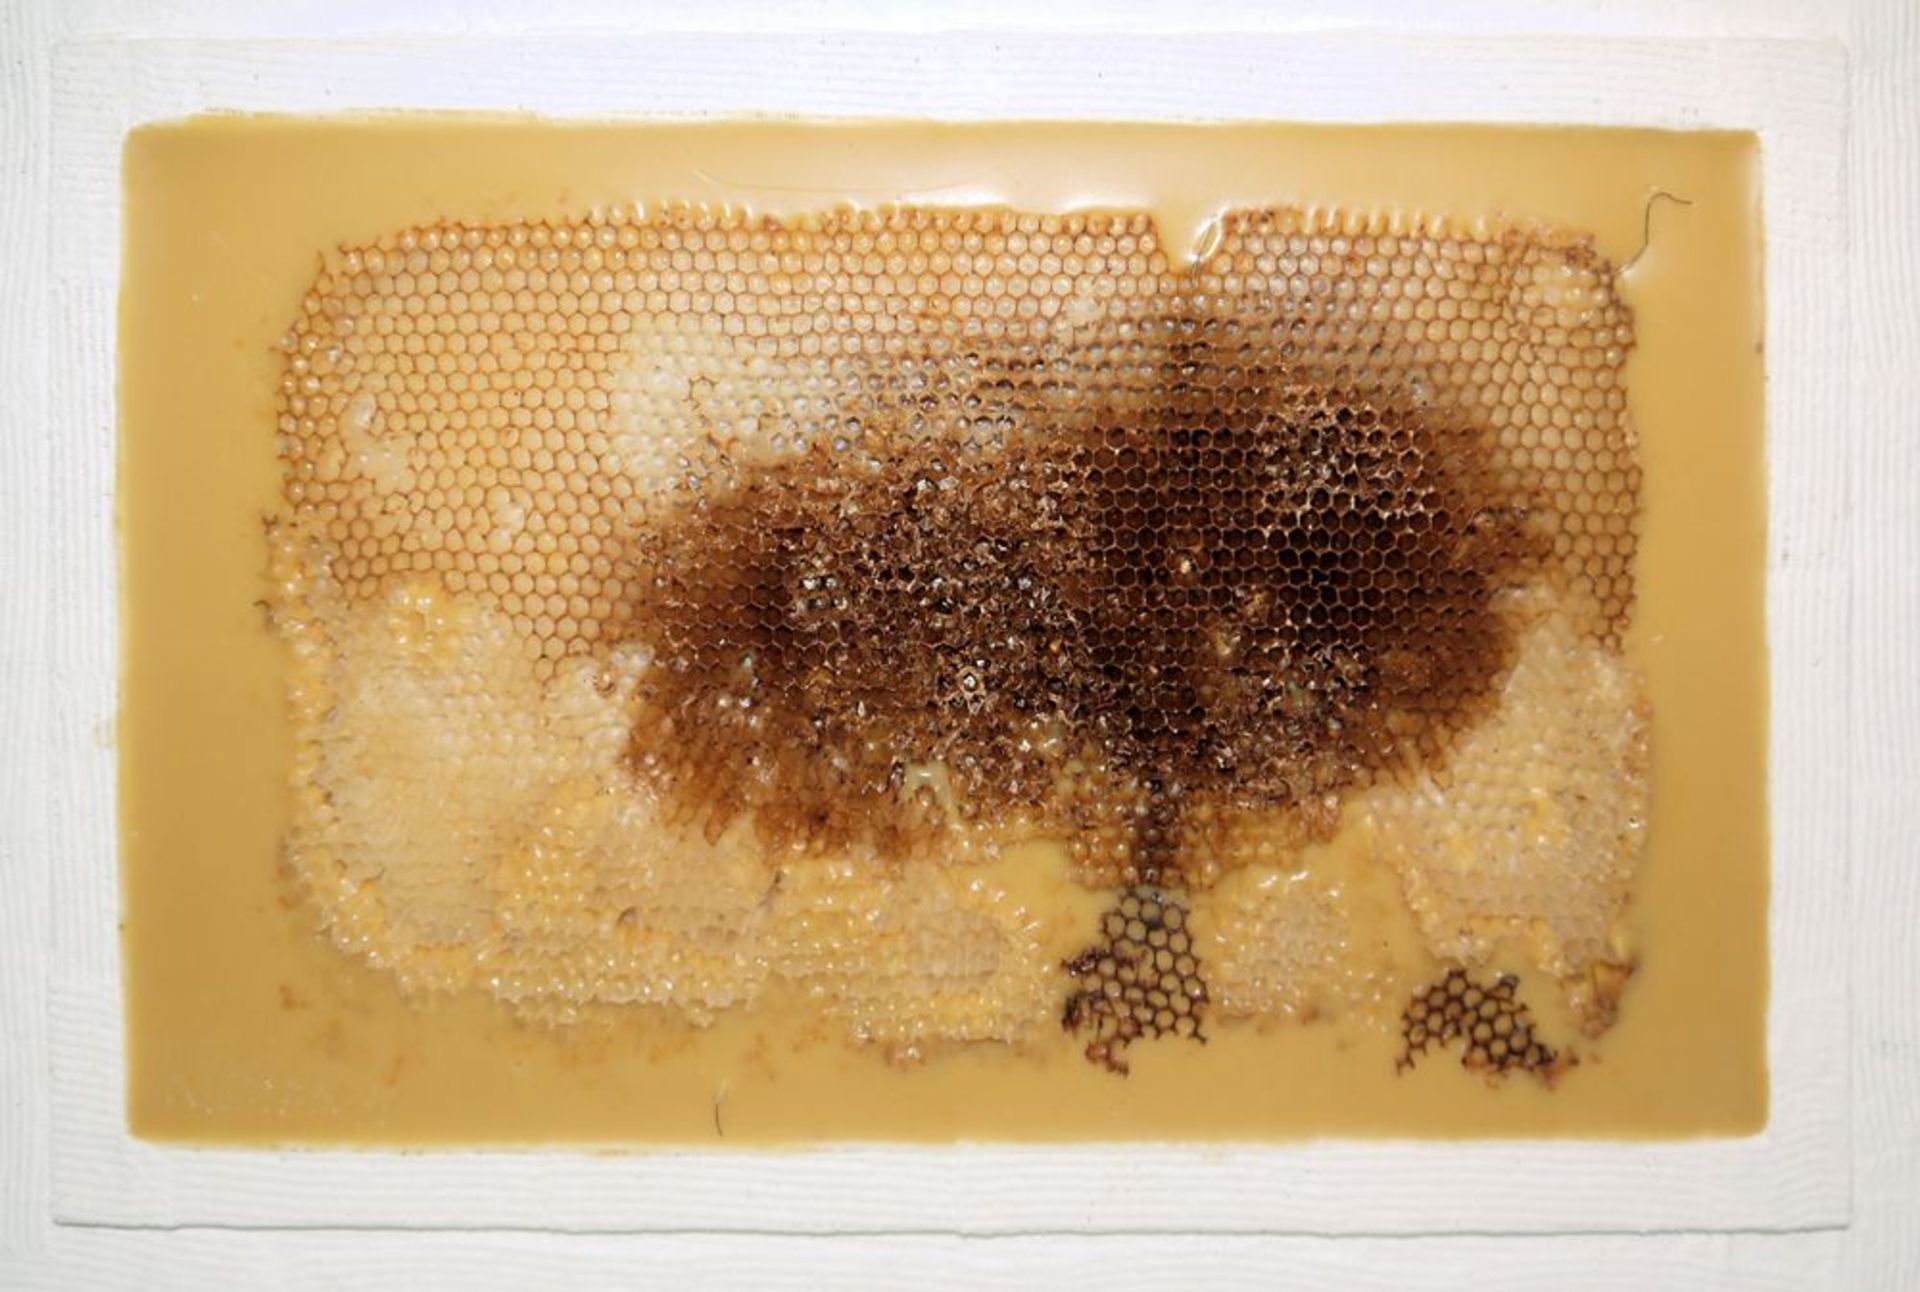 Johannes Metten, "Mutationen in Wachs", 2 signierte Wachs-Reliefs mit Bienenwaben von 1997 - Image 5 of 6